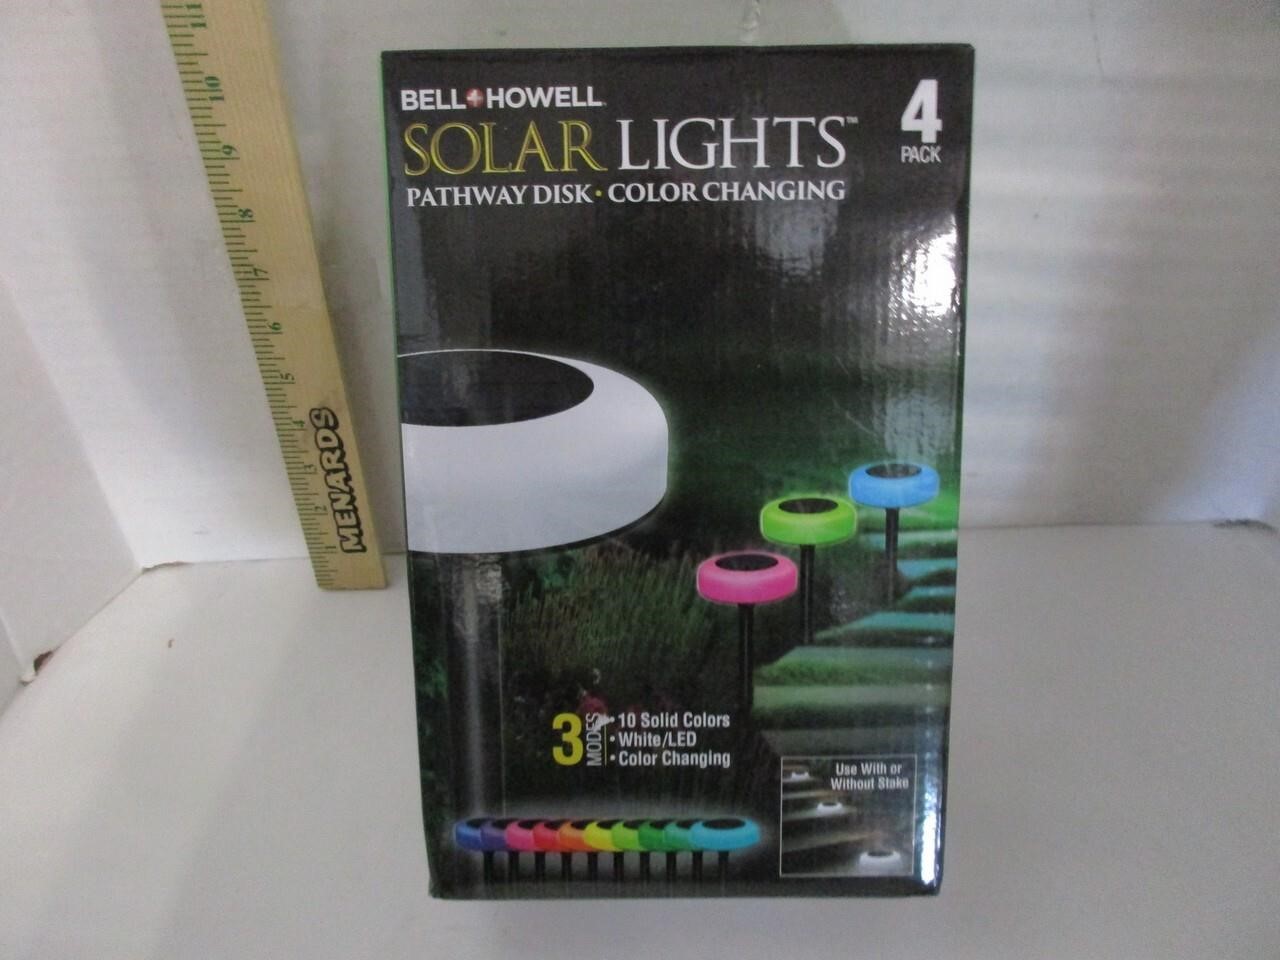 4 Bell + Howell Solar Lights